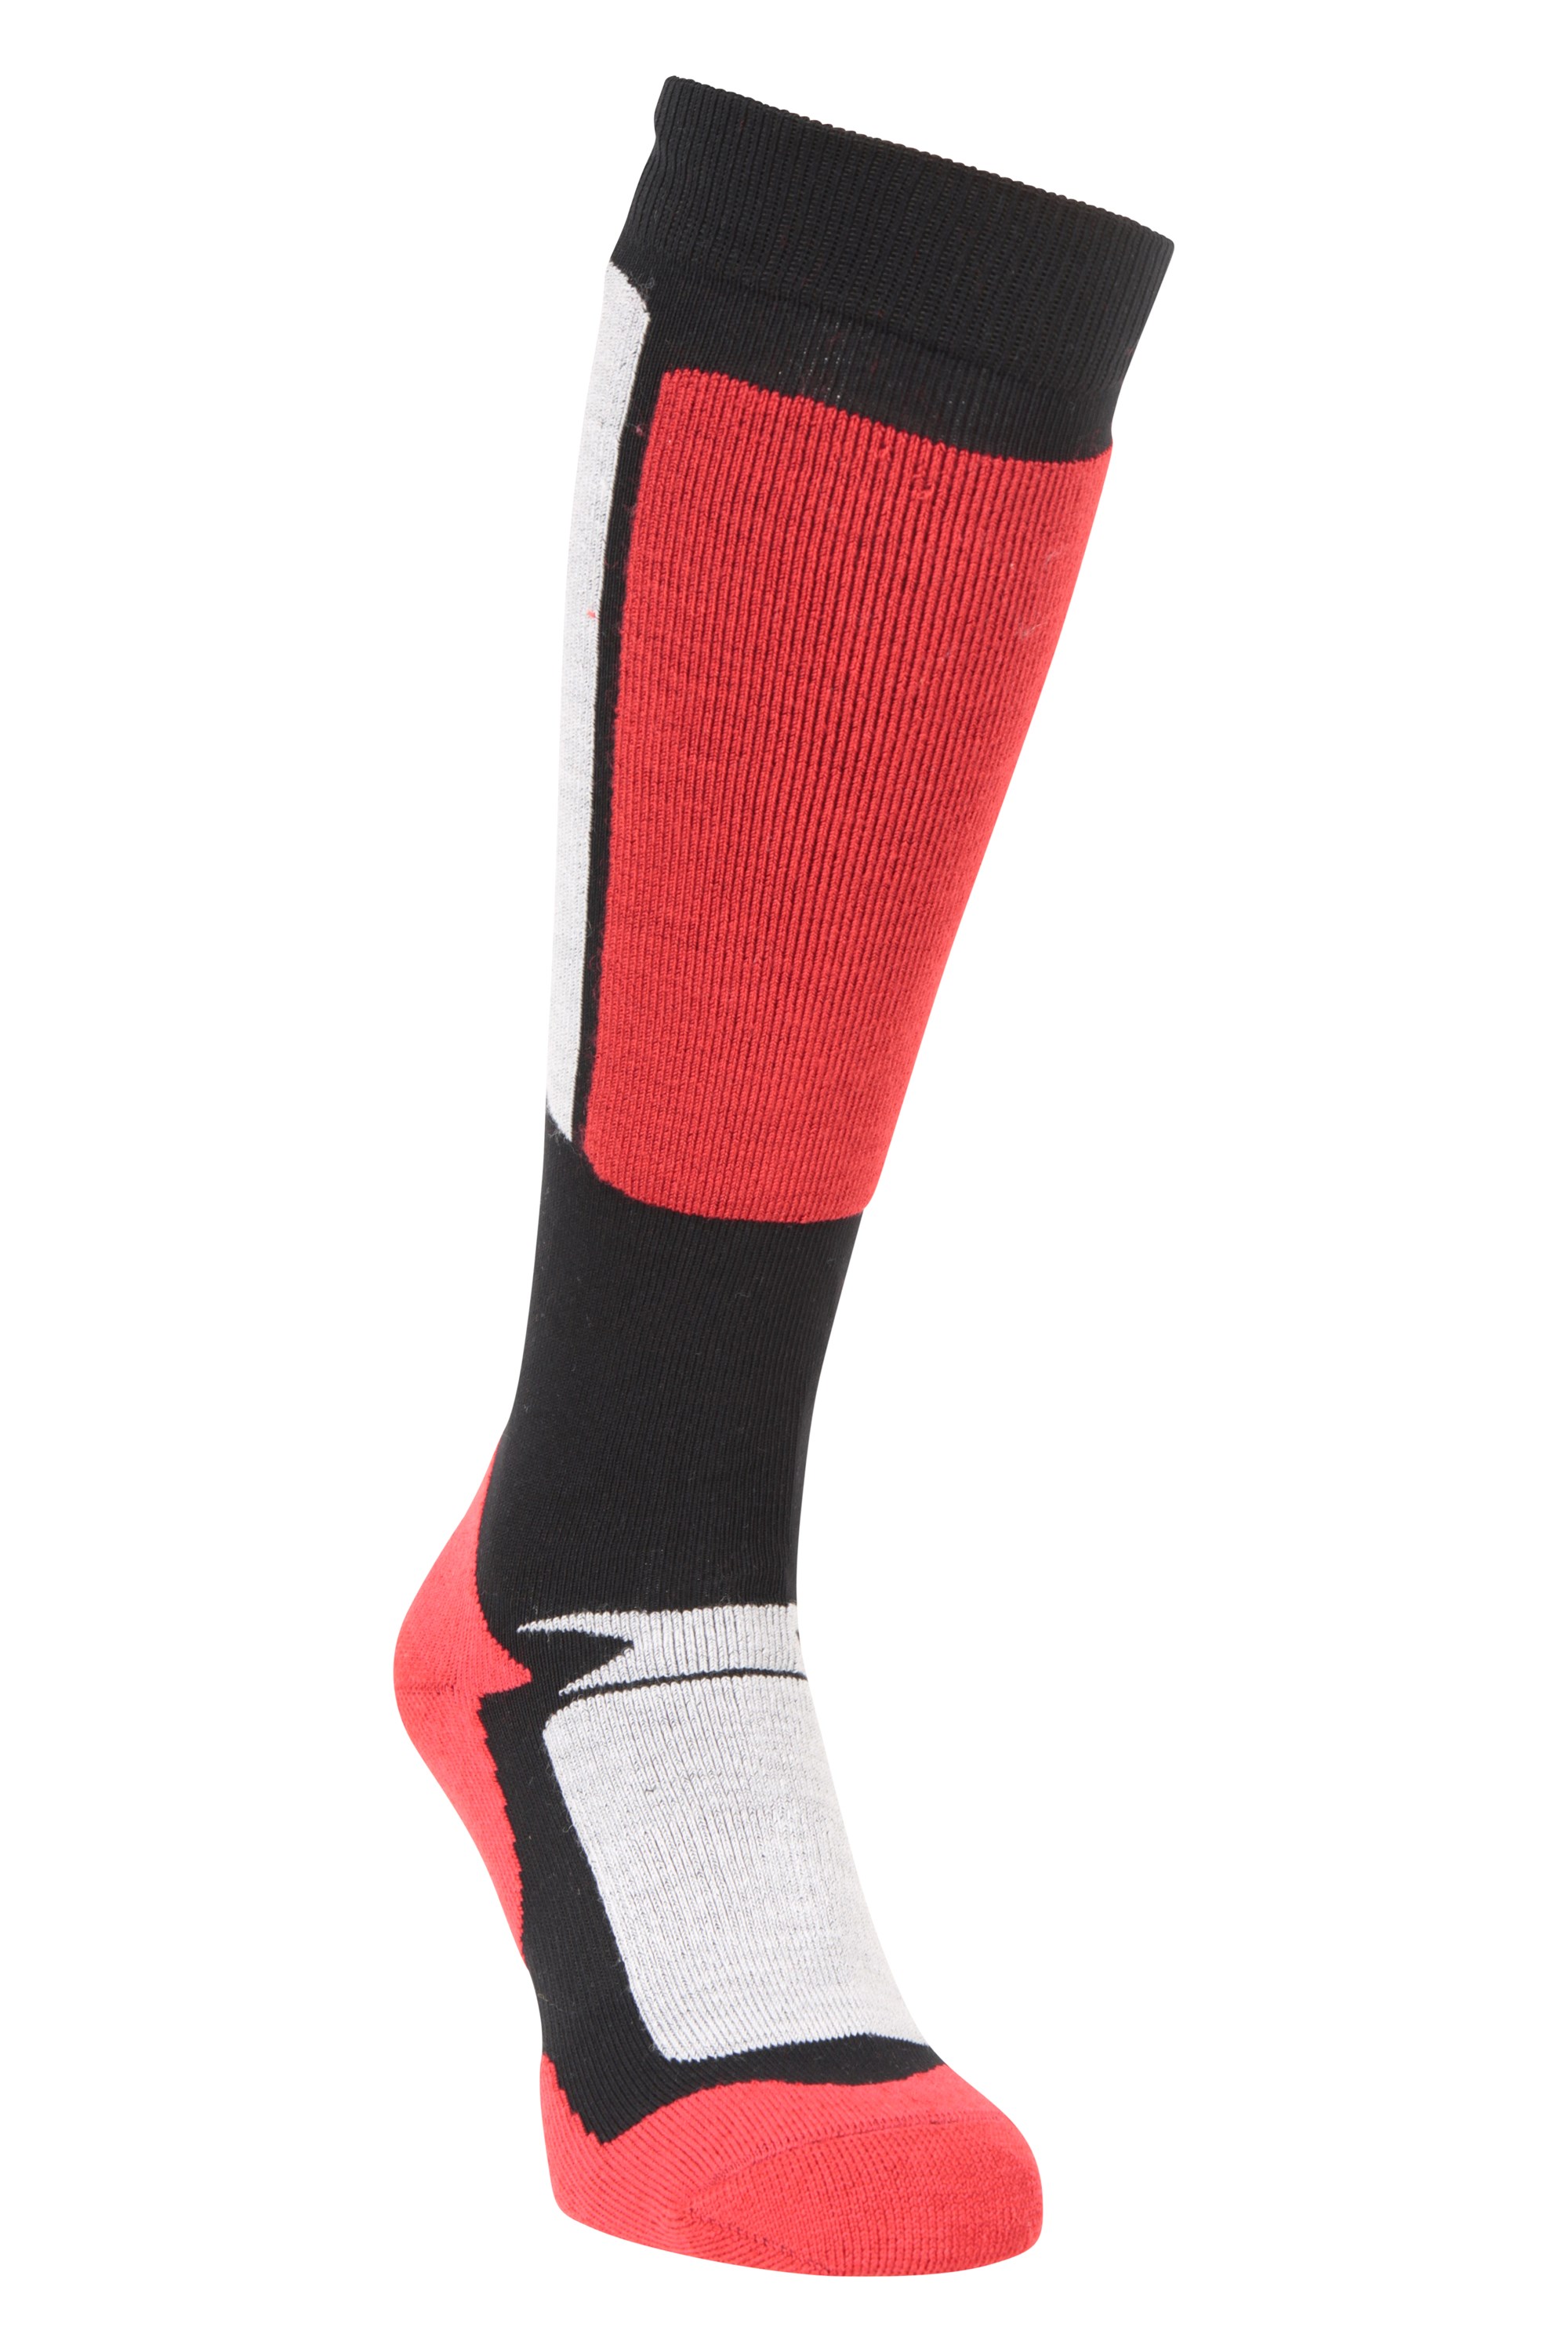 Extreme Mens Merino Thermal Ski Socks - Red